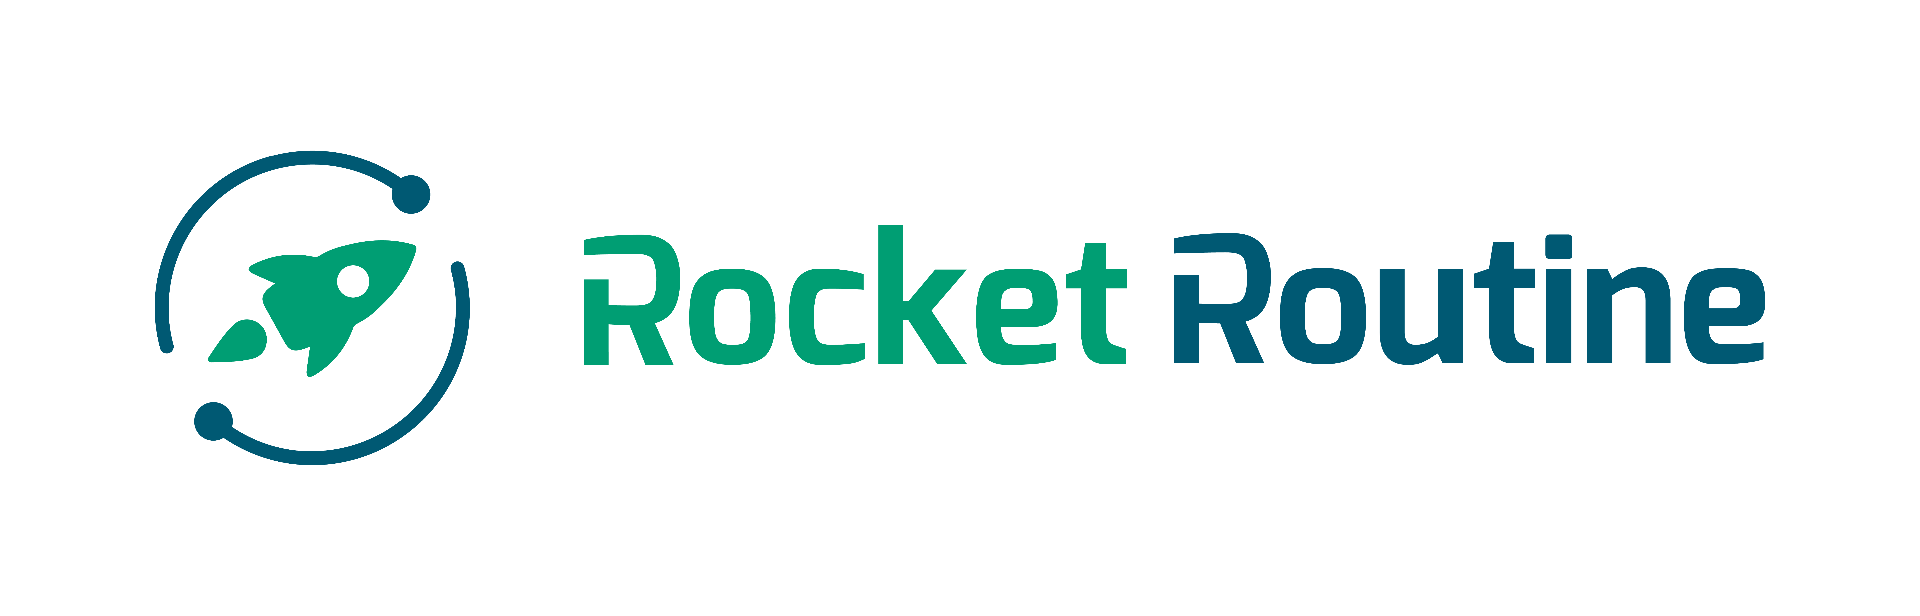 Rocket Routine - Software für Strategy Execution - Strategie, Ziele und Daily Business miteinander integriert